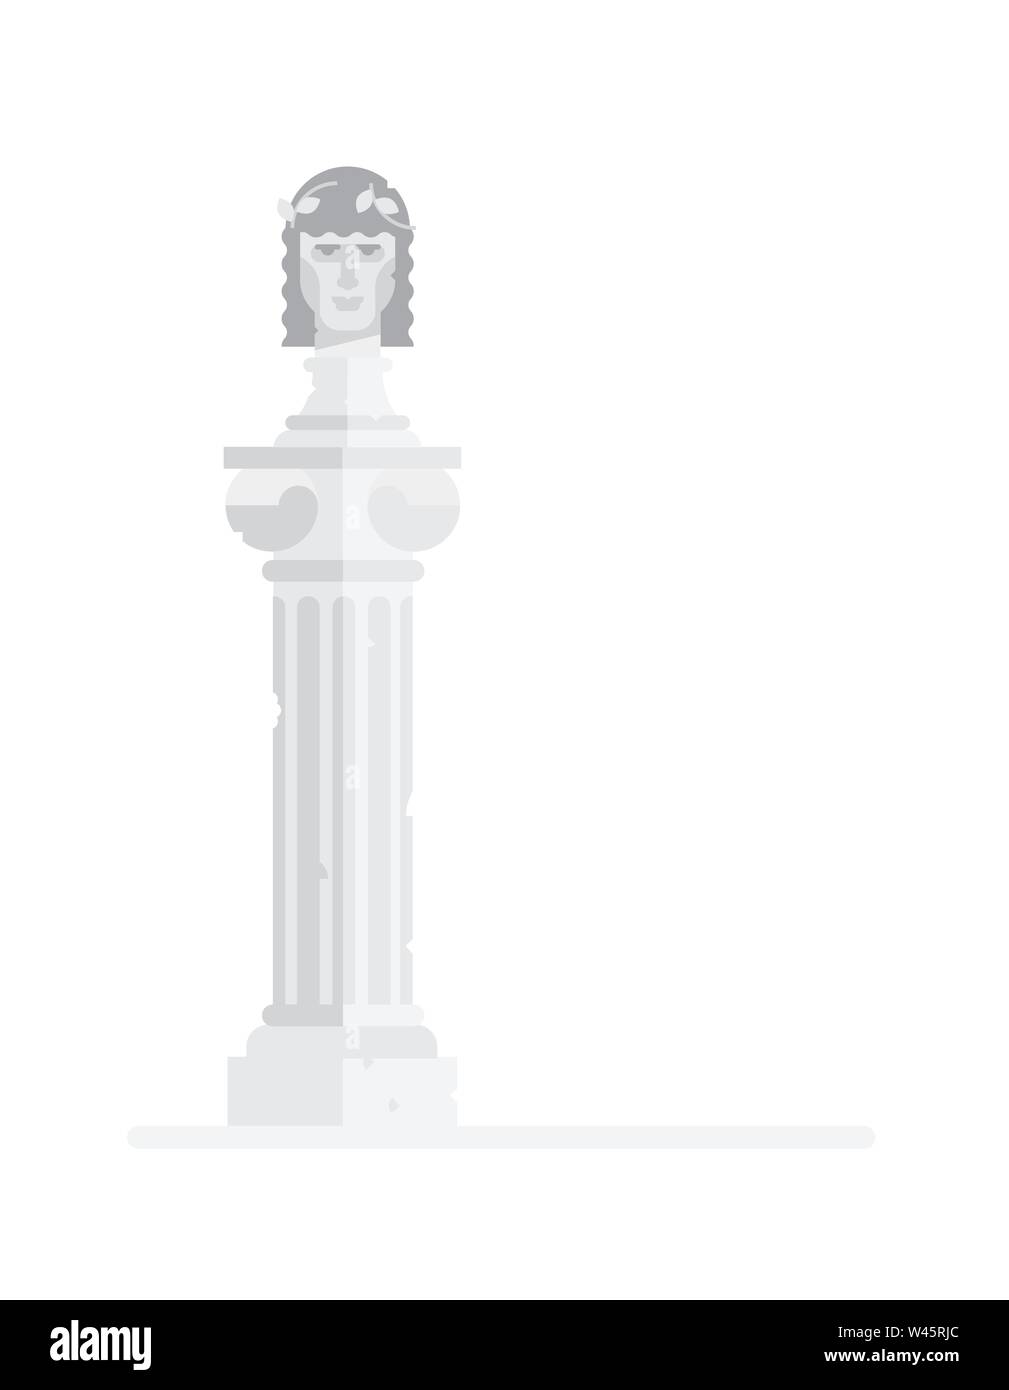 Buste sculpté du dieu grec. Télévision illustration du roi grec sur la colonne. Vector illustration. Icône d'un empereur romain est isolé sur un whi Illustration de Vecteur